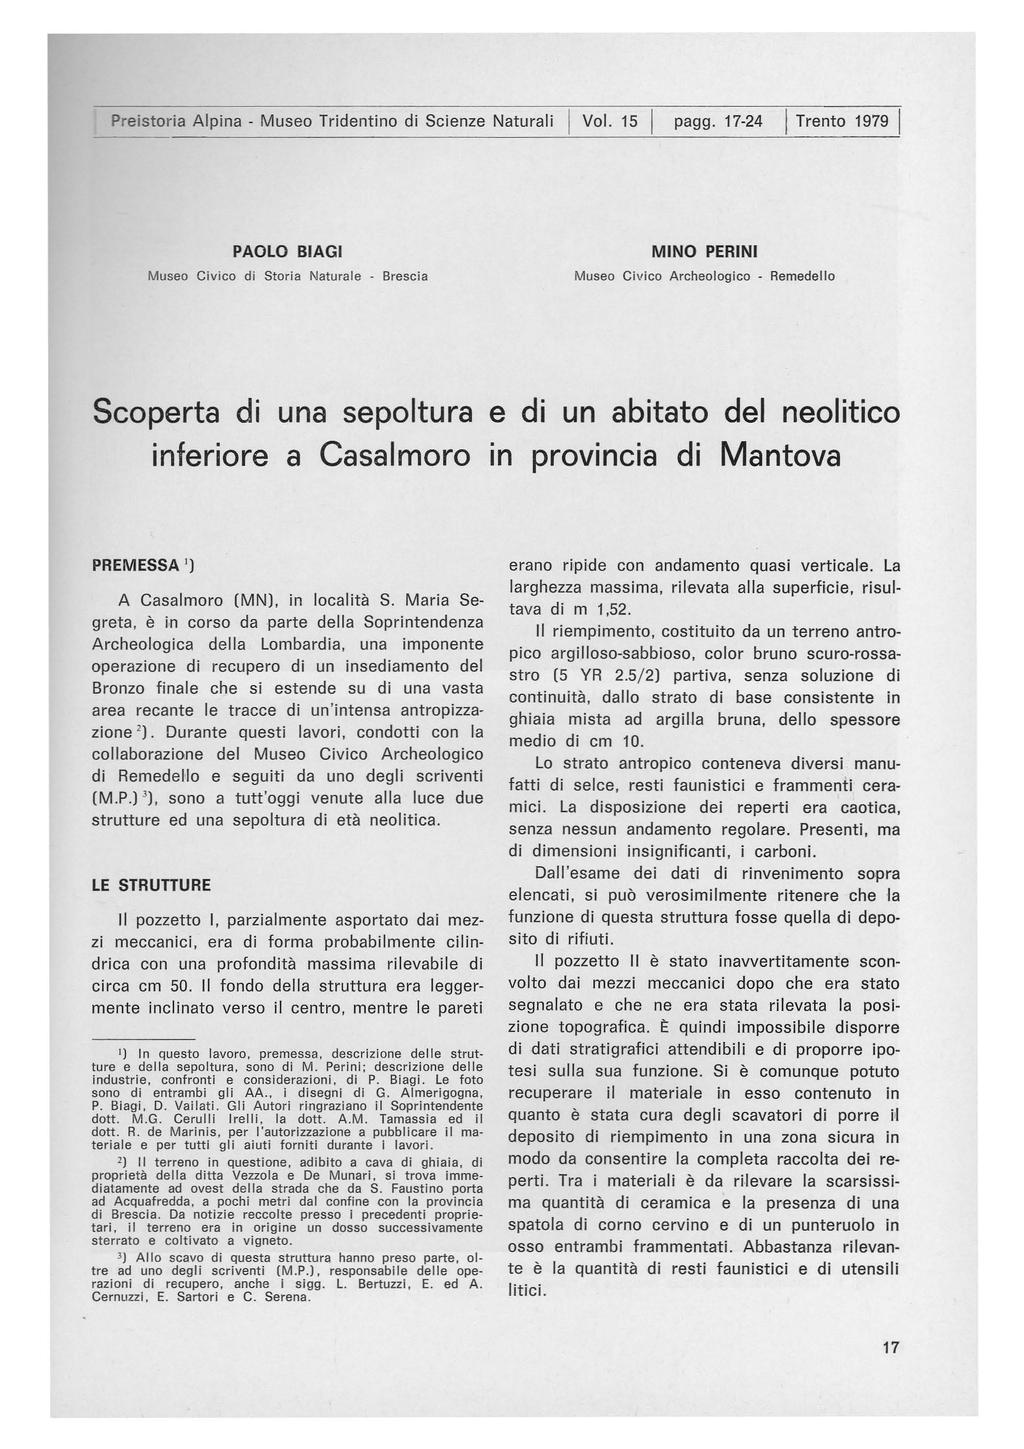 Preistoria Alpina - Museo Tridentino di Scienze Naturali I VoI. 15 I pagg.